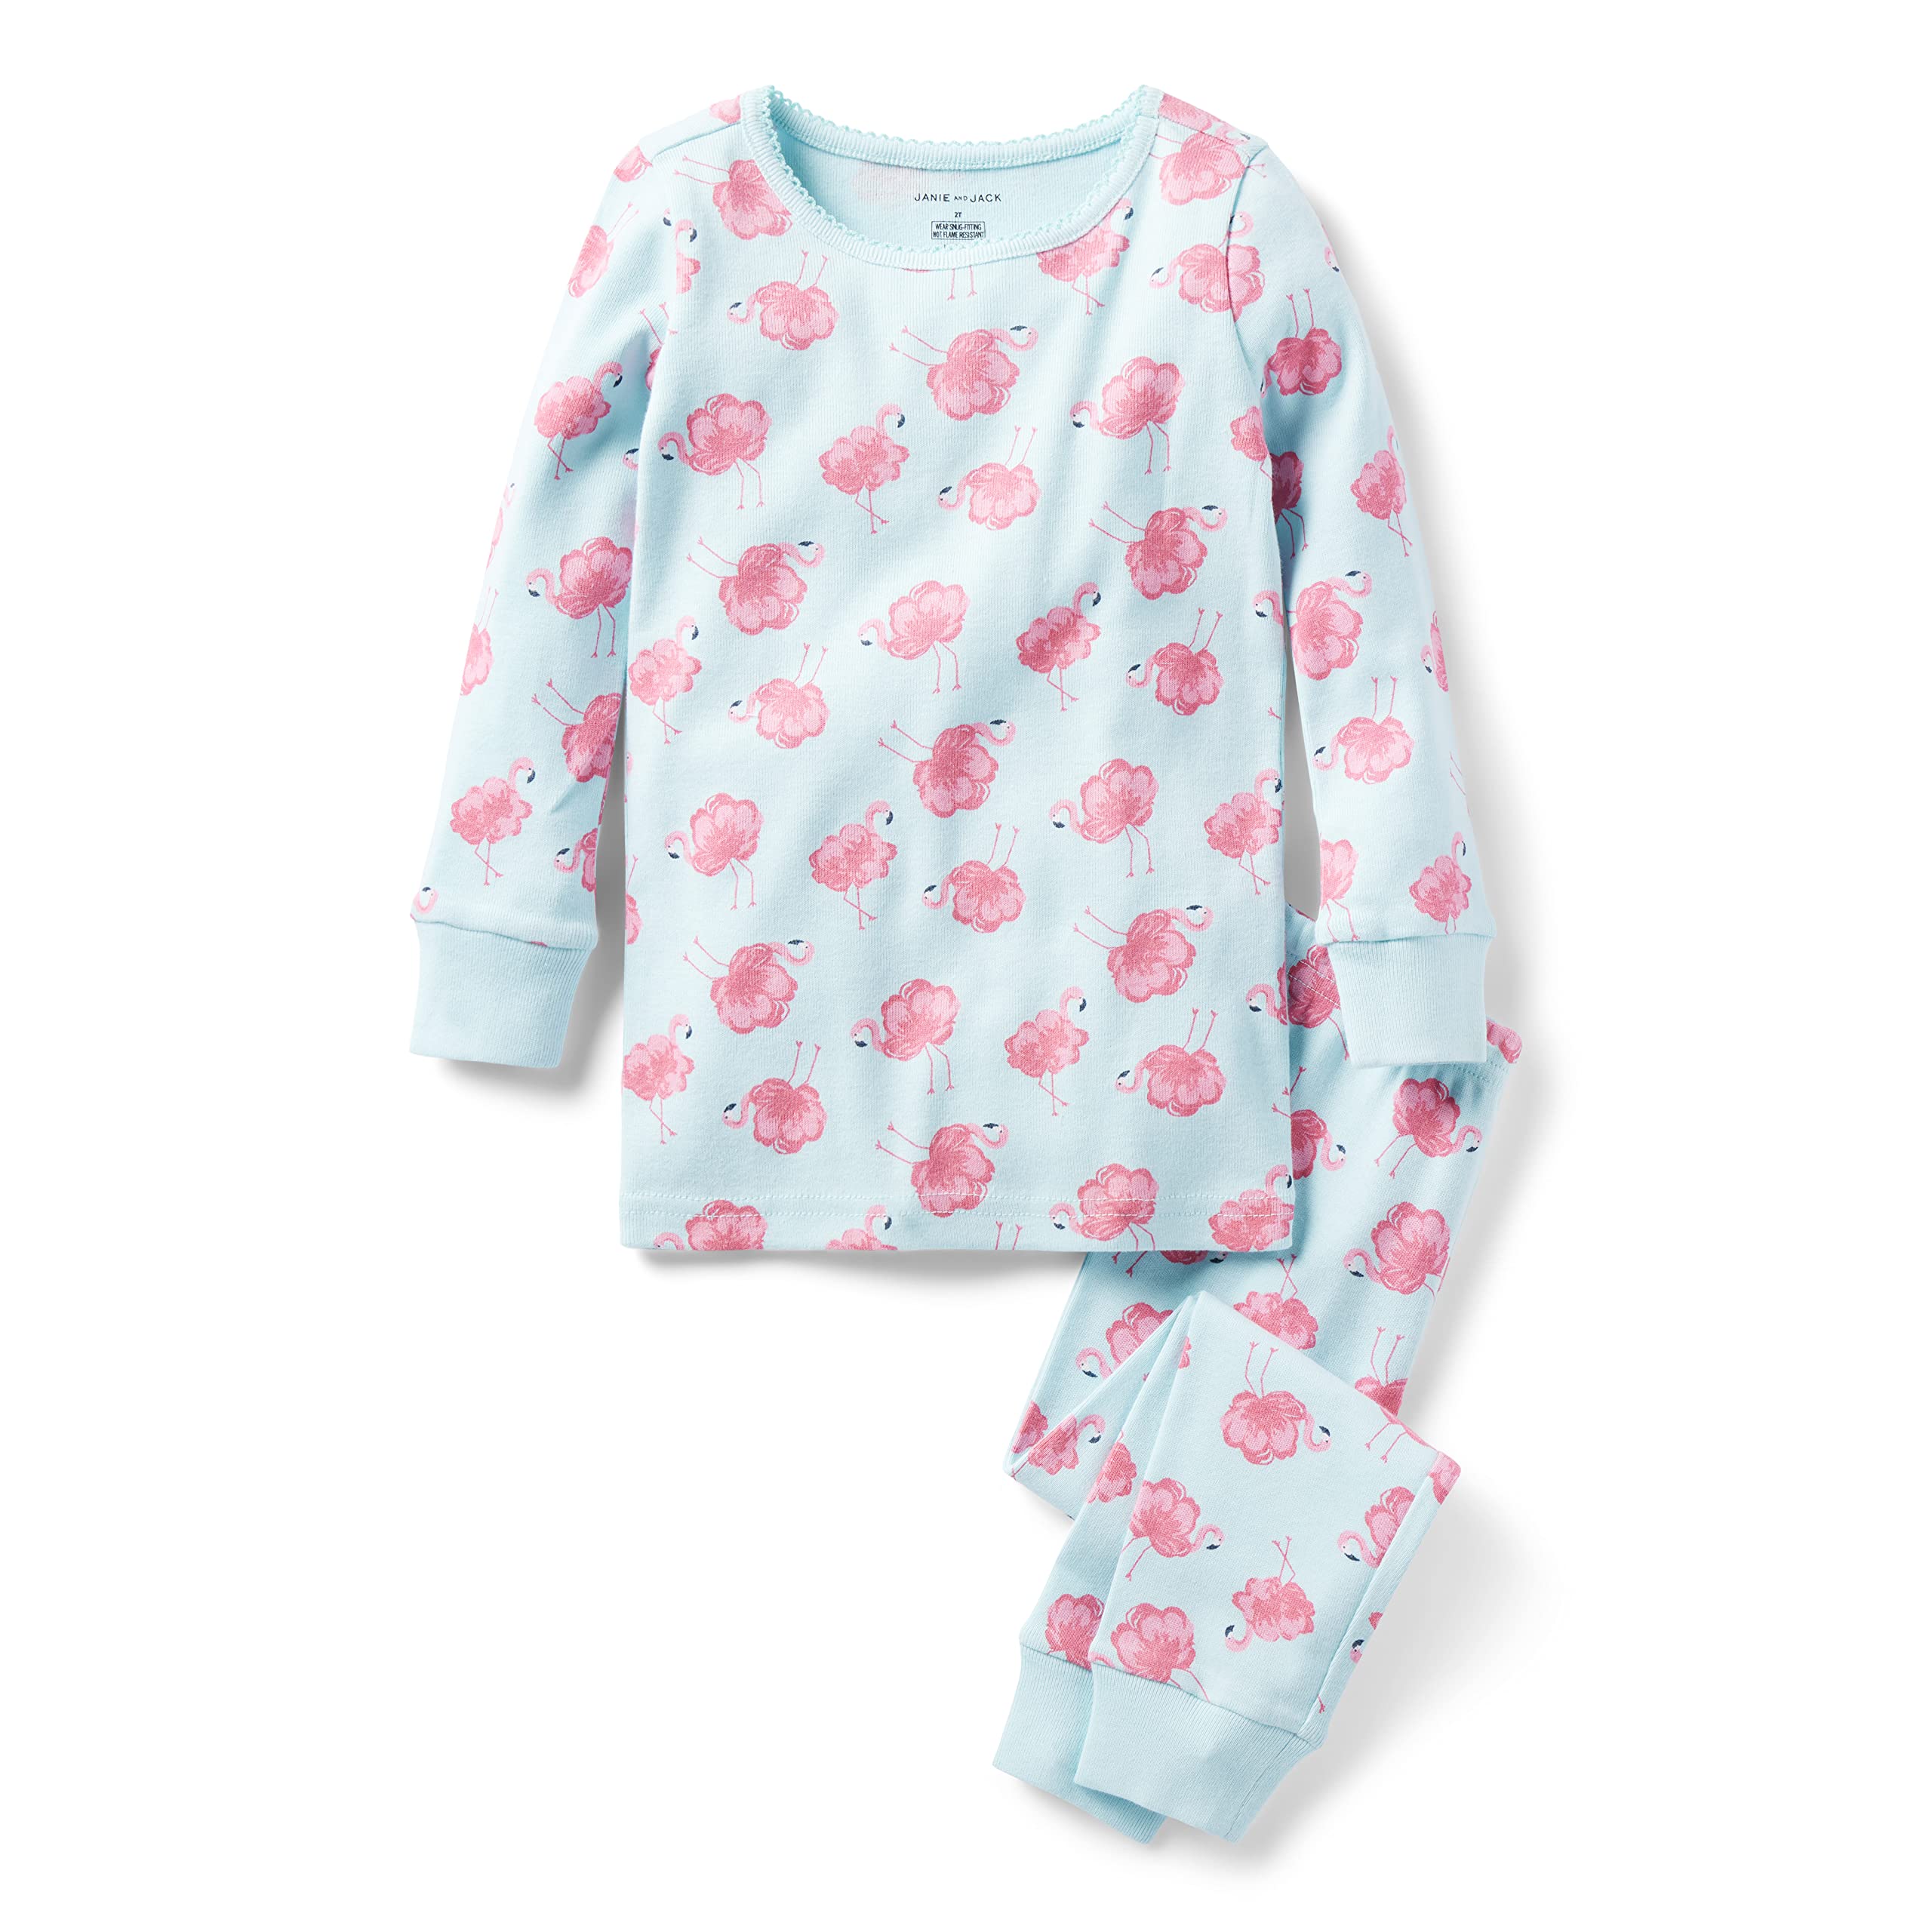 Обтягивающая одежда для сна с принтом фламинго (для малышей/маленьких детей/больших детей) Janie and Jack